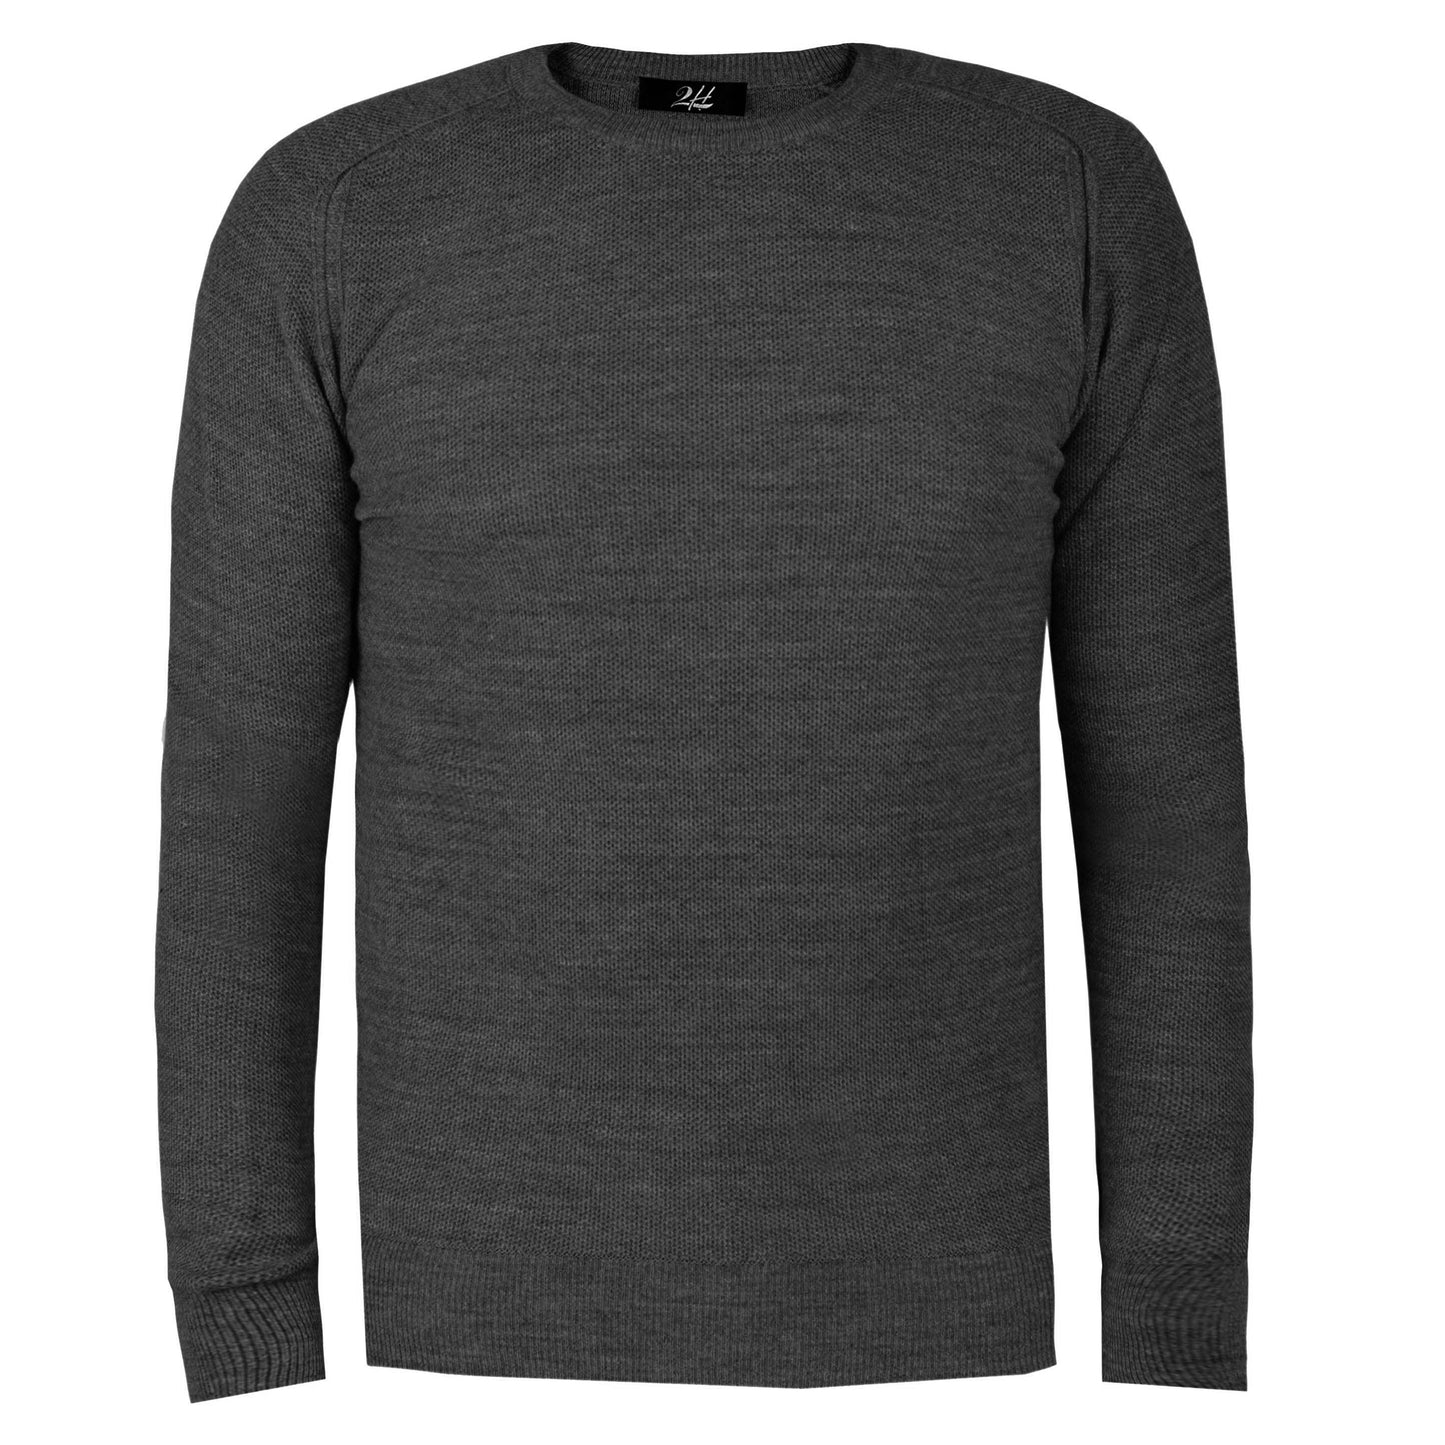 2H Dark Grey Knitted Round Neck Sweater